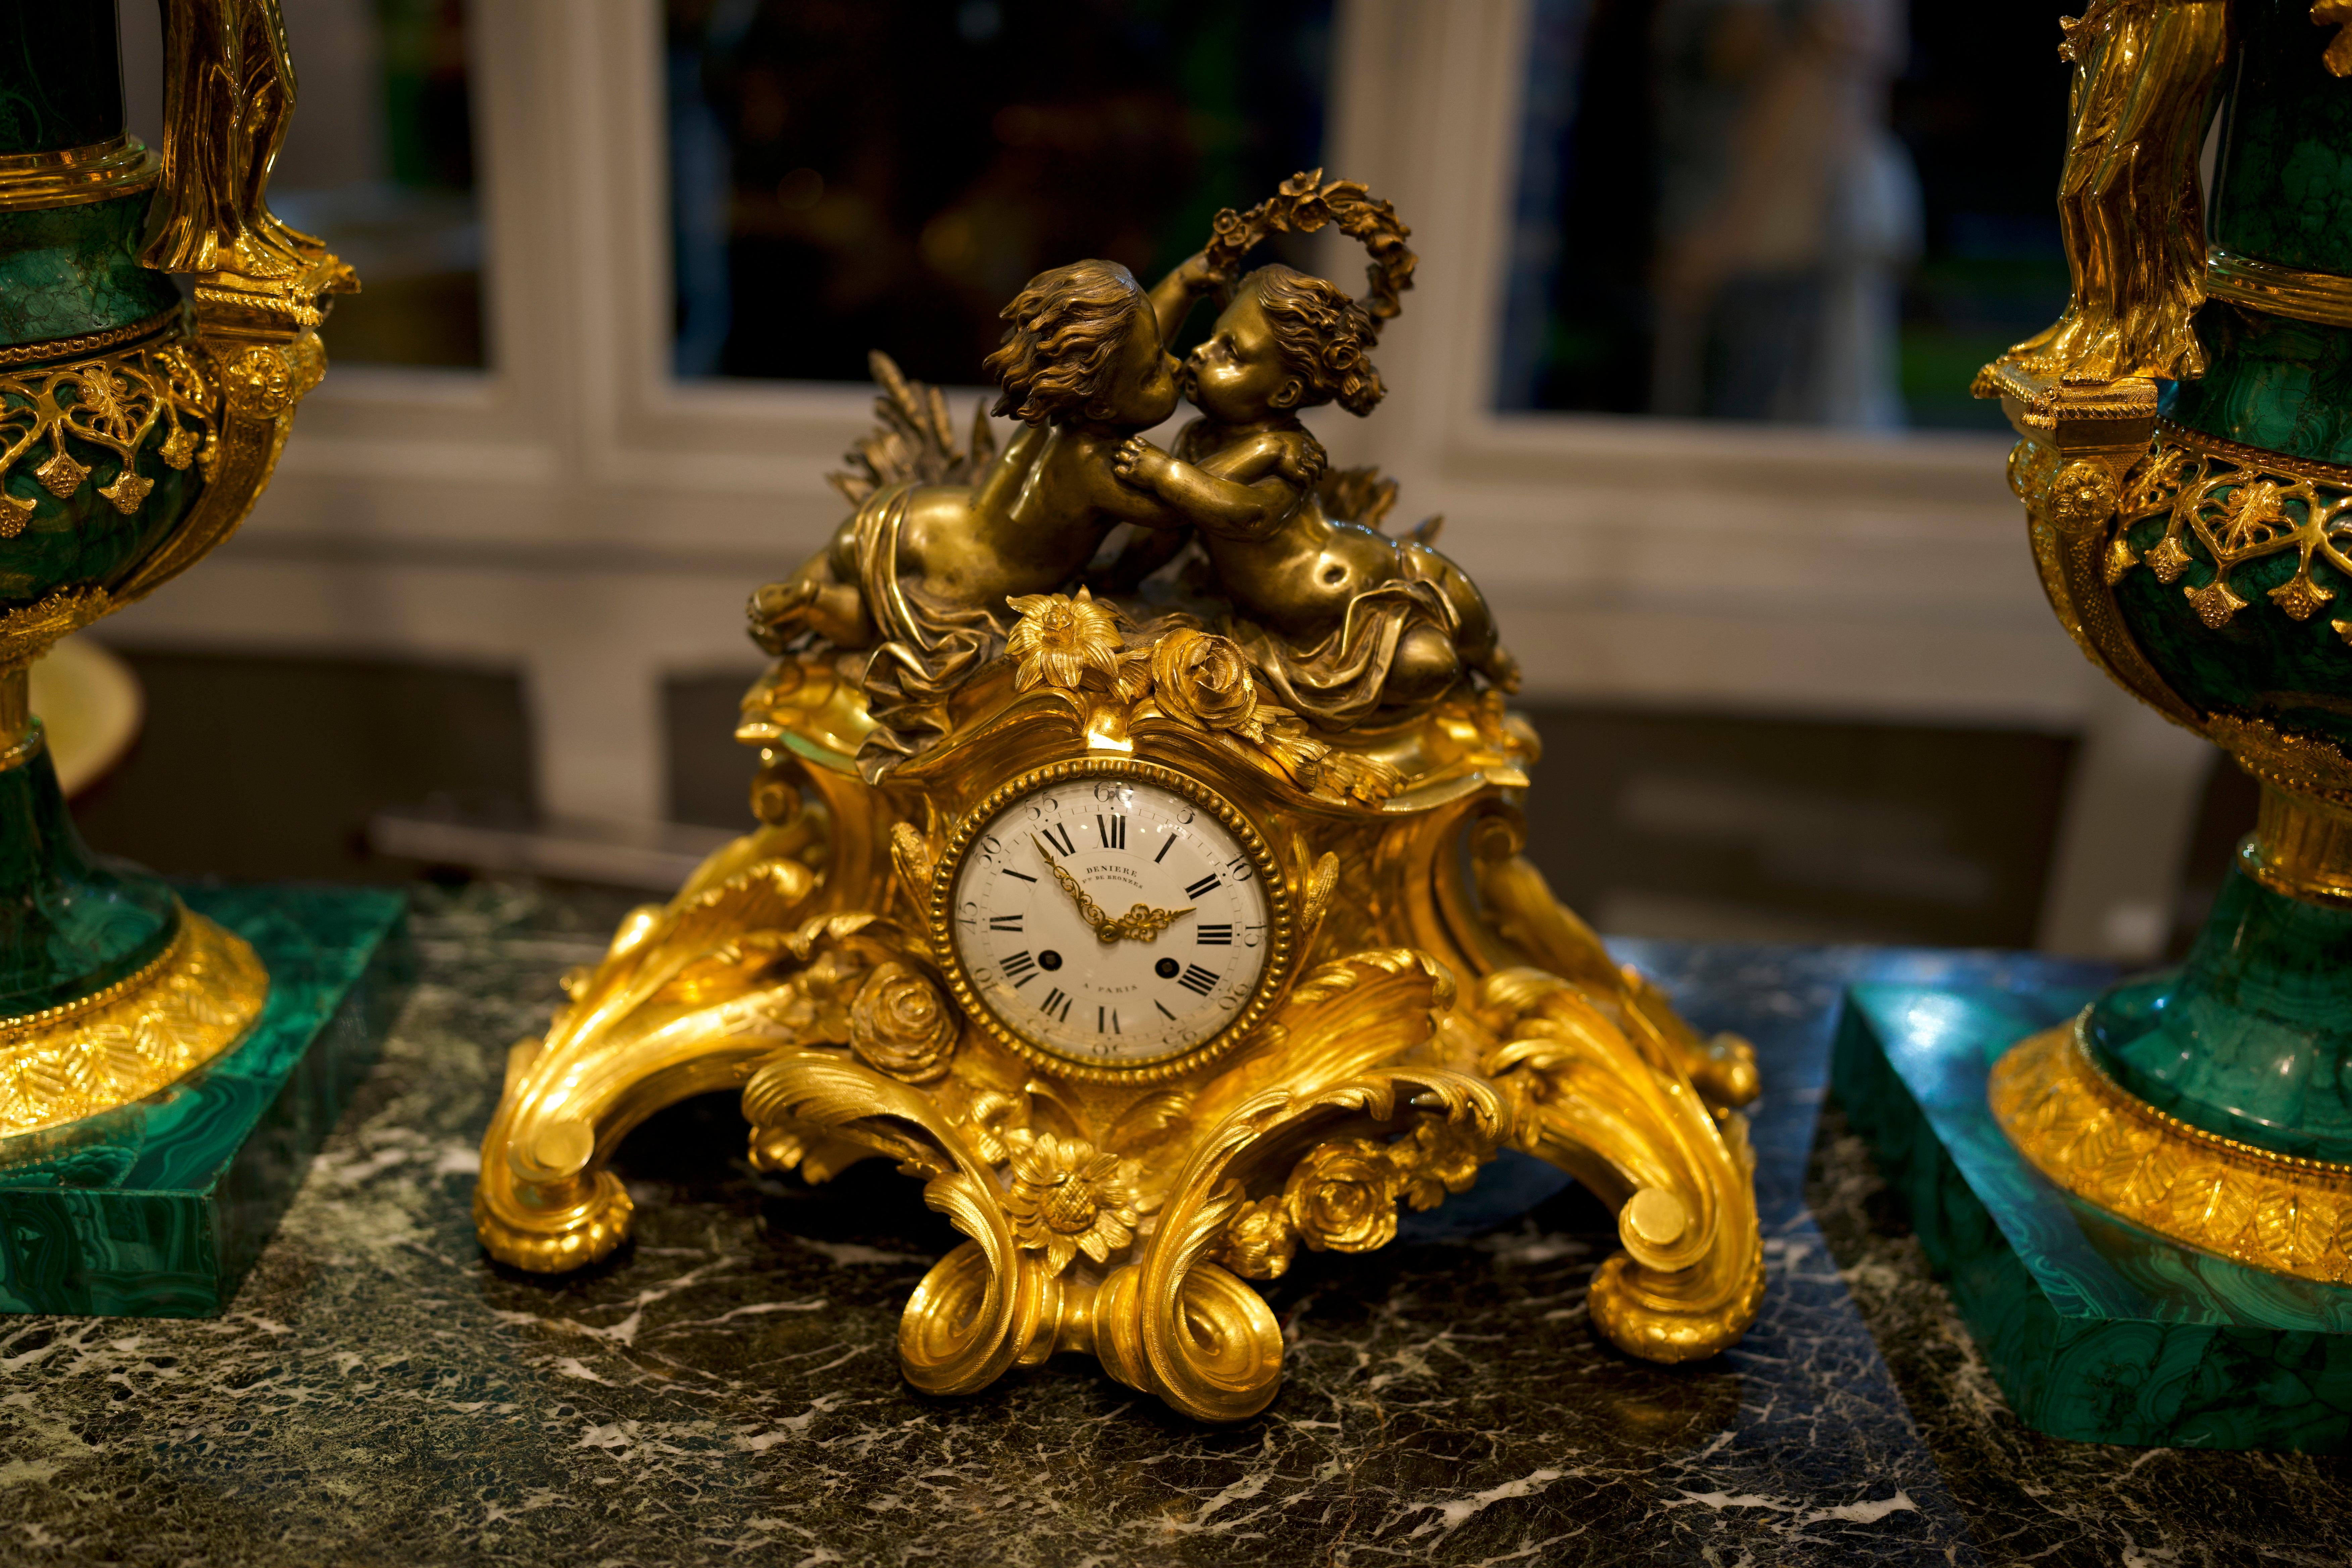 Louis XV-Stil 19. Jahrhundert Französisch figuralen vergoldeter Bronze Kaminsims Uhr.

Das Emailzifferblatt mit römischen Ziffern und blattdurchbrochenen vergoldeten Zeigern. Signiert Deniere A Paris. Die beiden bronzenen Putten, die sich küssen,